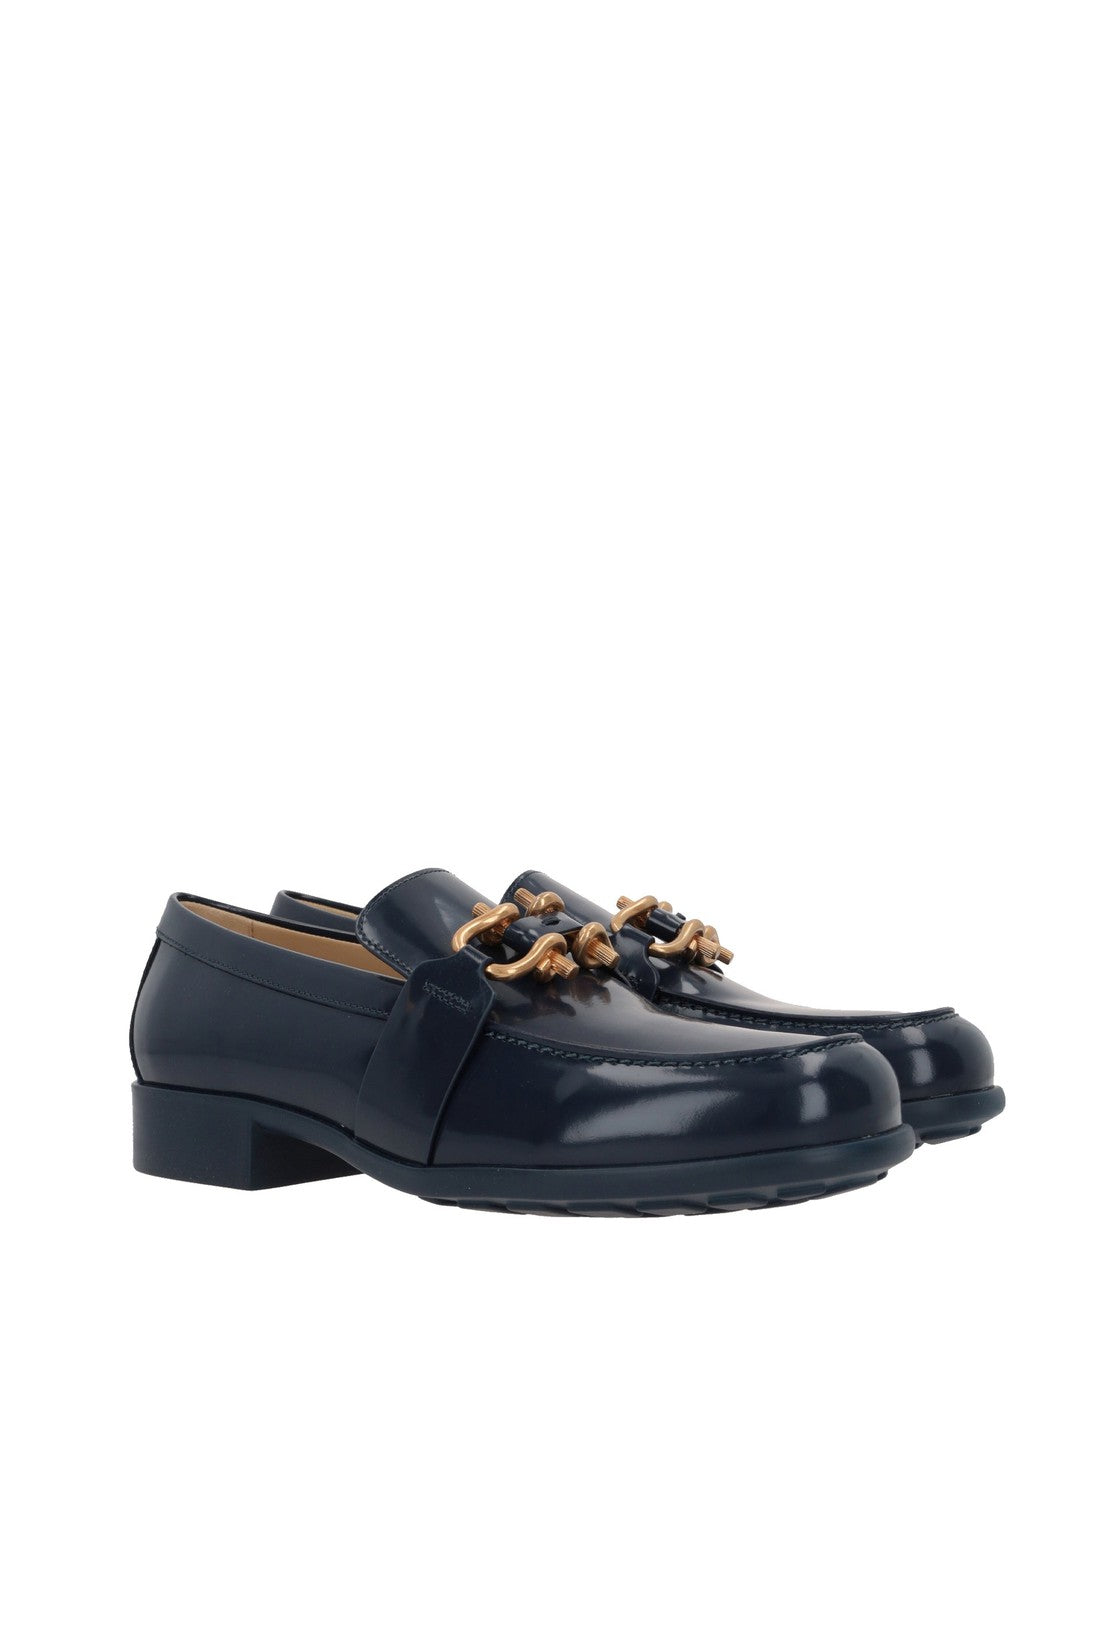 BOTTEGA VENETA-Bottega Veneta Monsieur Loafer Shoes-WOMEN SHOES-Outlet-Sale